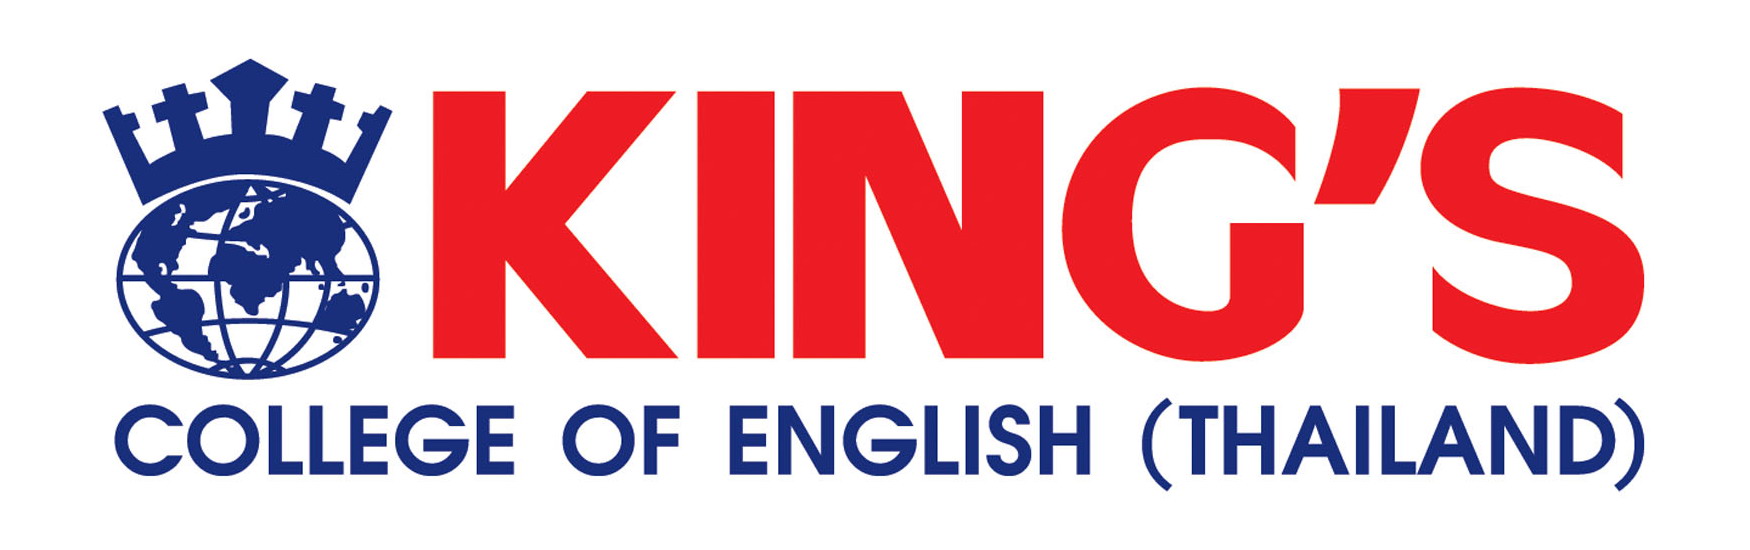 บริษัทคิงส์คอลเลจออฟอิงลิช (ประเทศไทย) จำกัด logo โลโก้